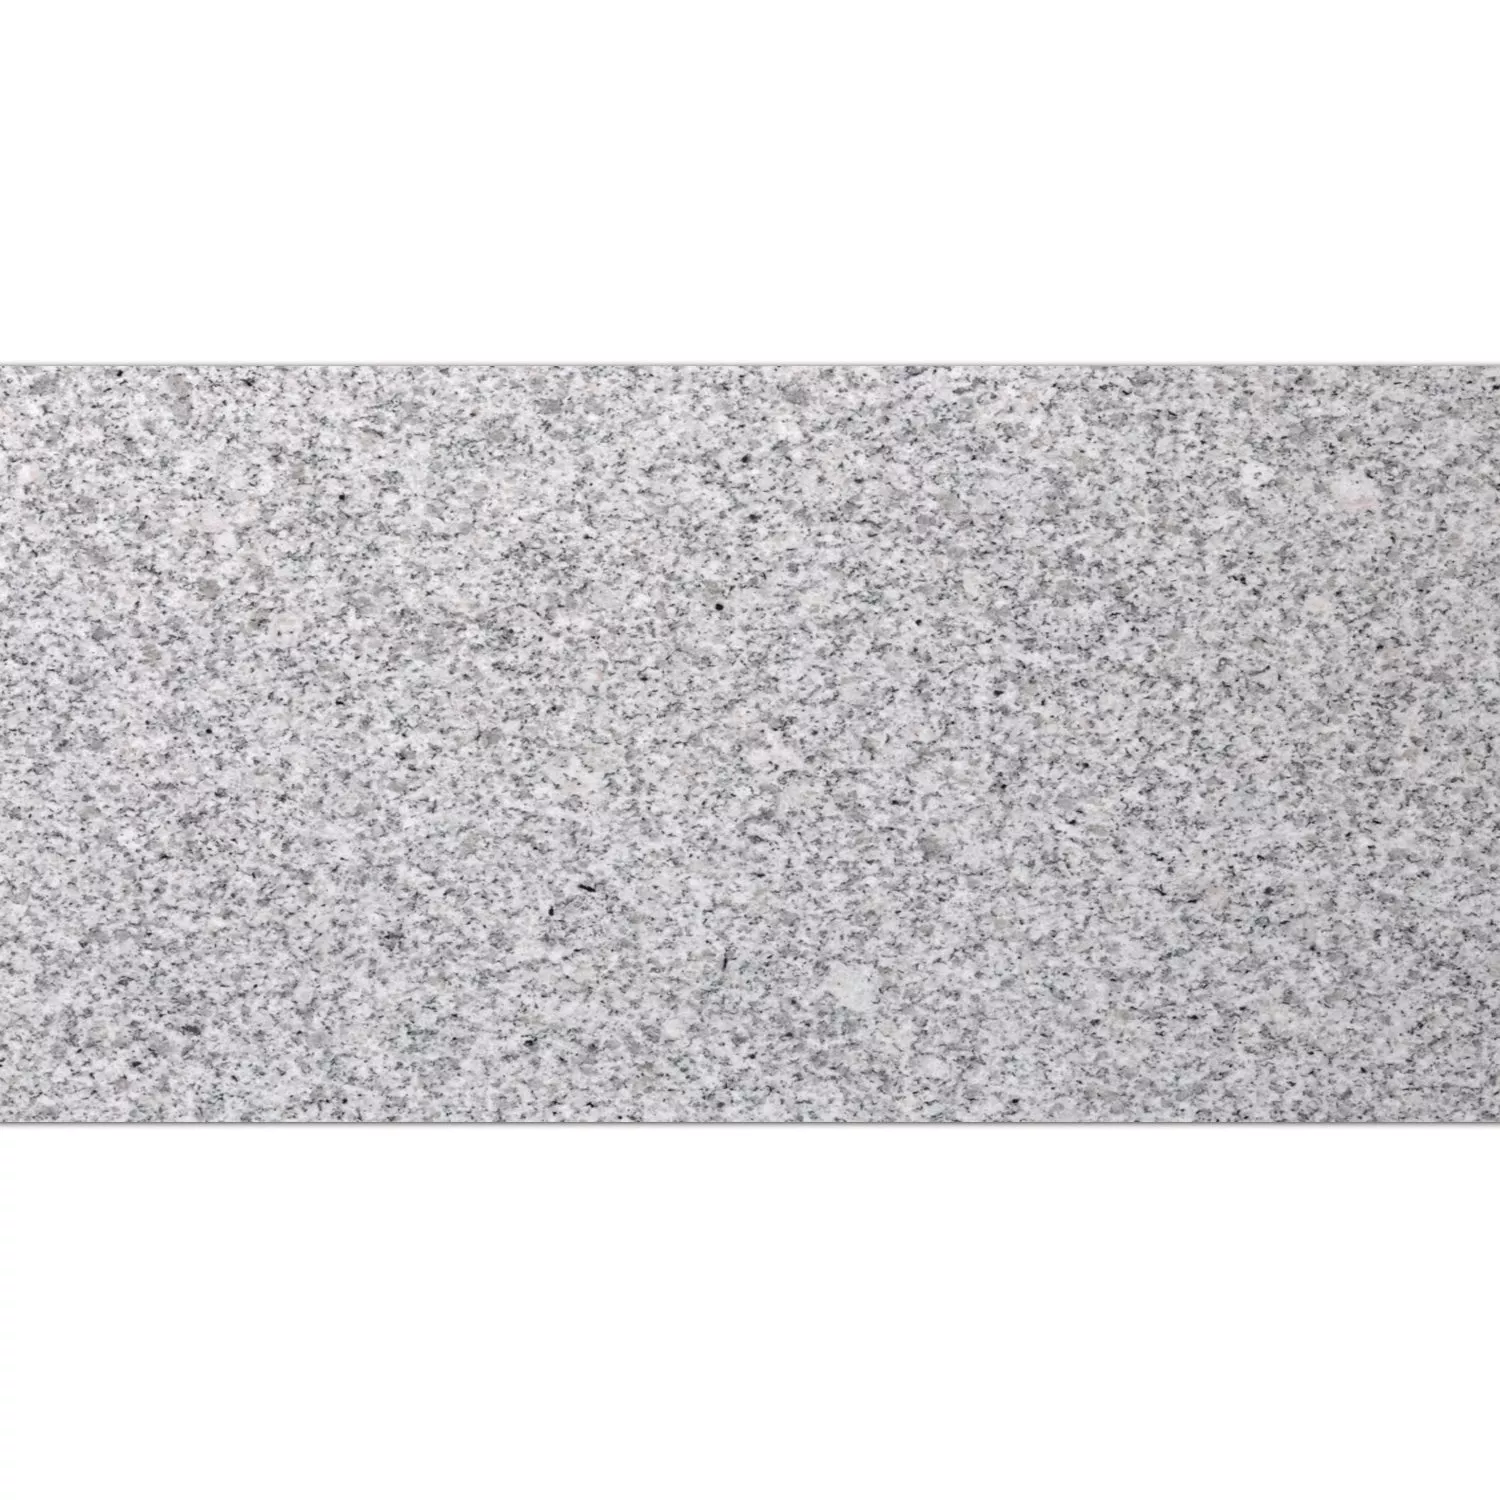 Placi De Piatra Naturala Granit China Grey În Flăcări 30,5x61cm